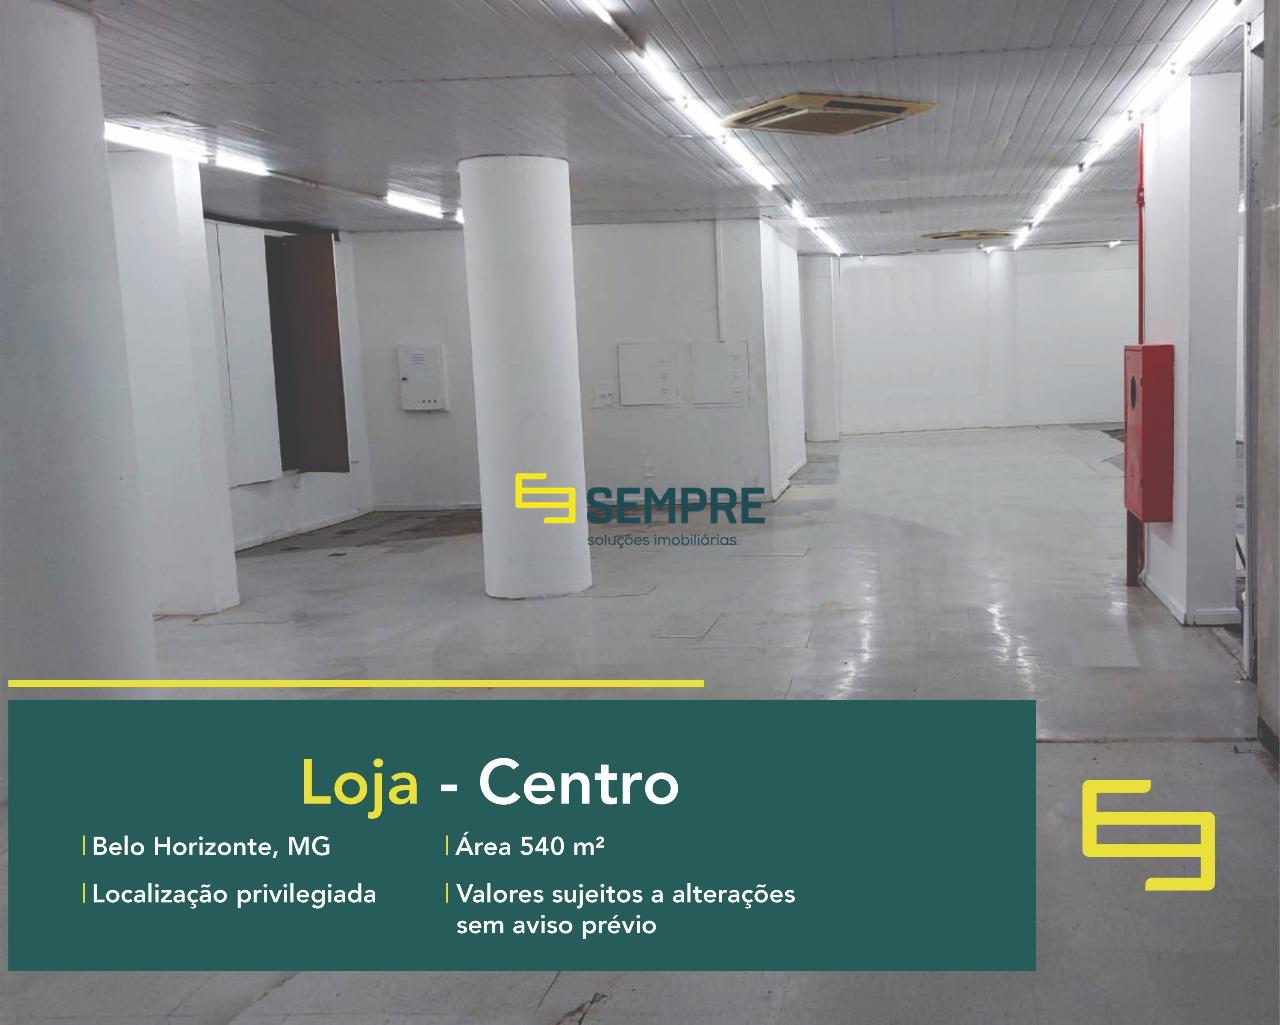 Ponto comercial para alugar no Centro de Belo Horizonte, excelente localização. O estabelecimento comercial conta com área de 540 m².